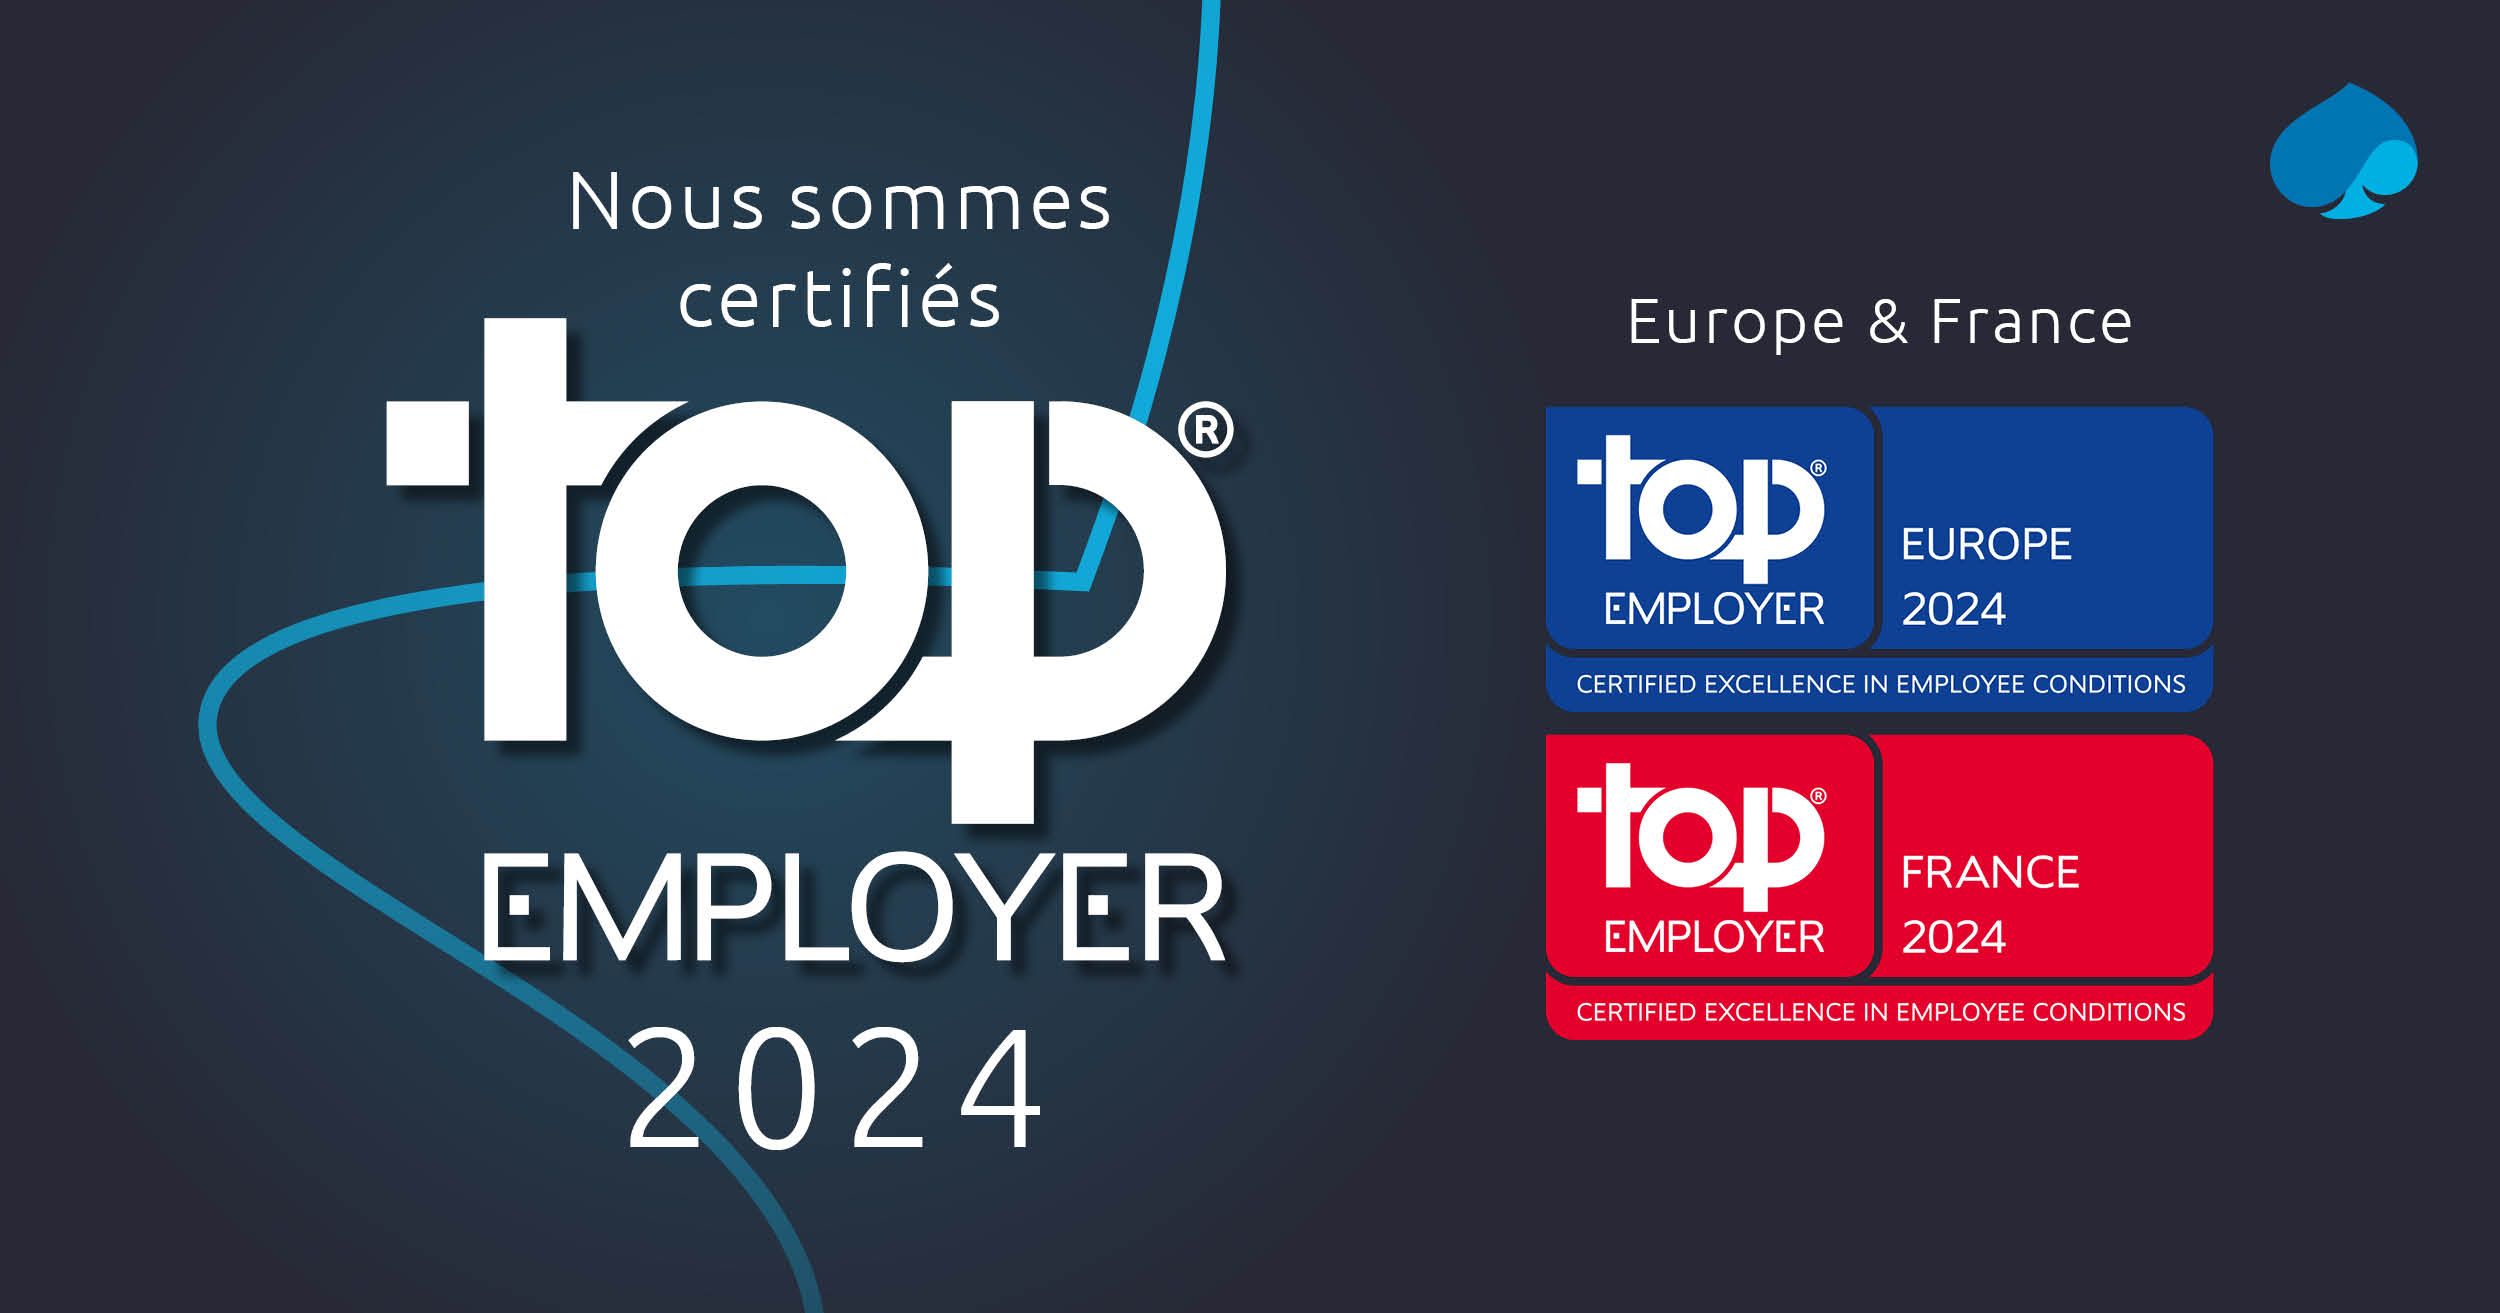 Nous sommes certifiés Top Employer 2024